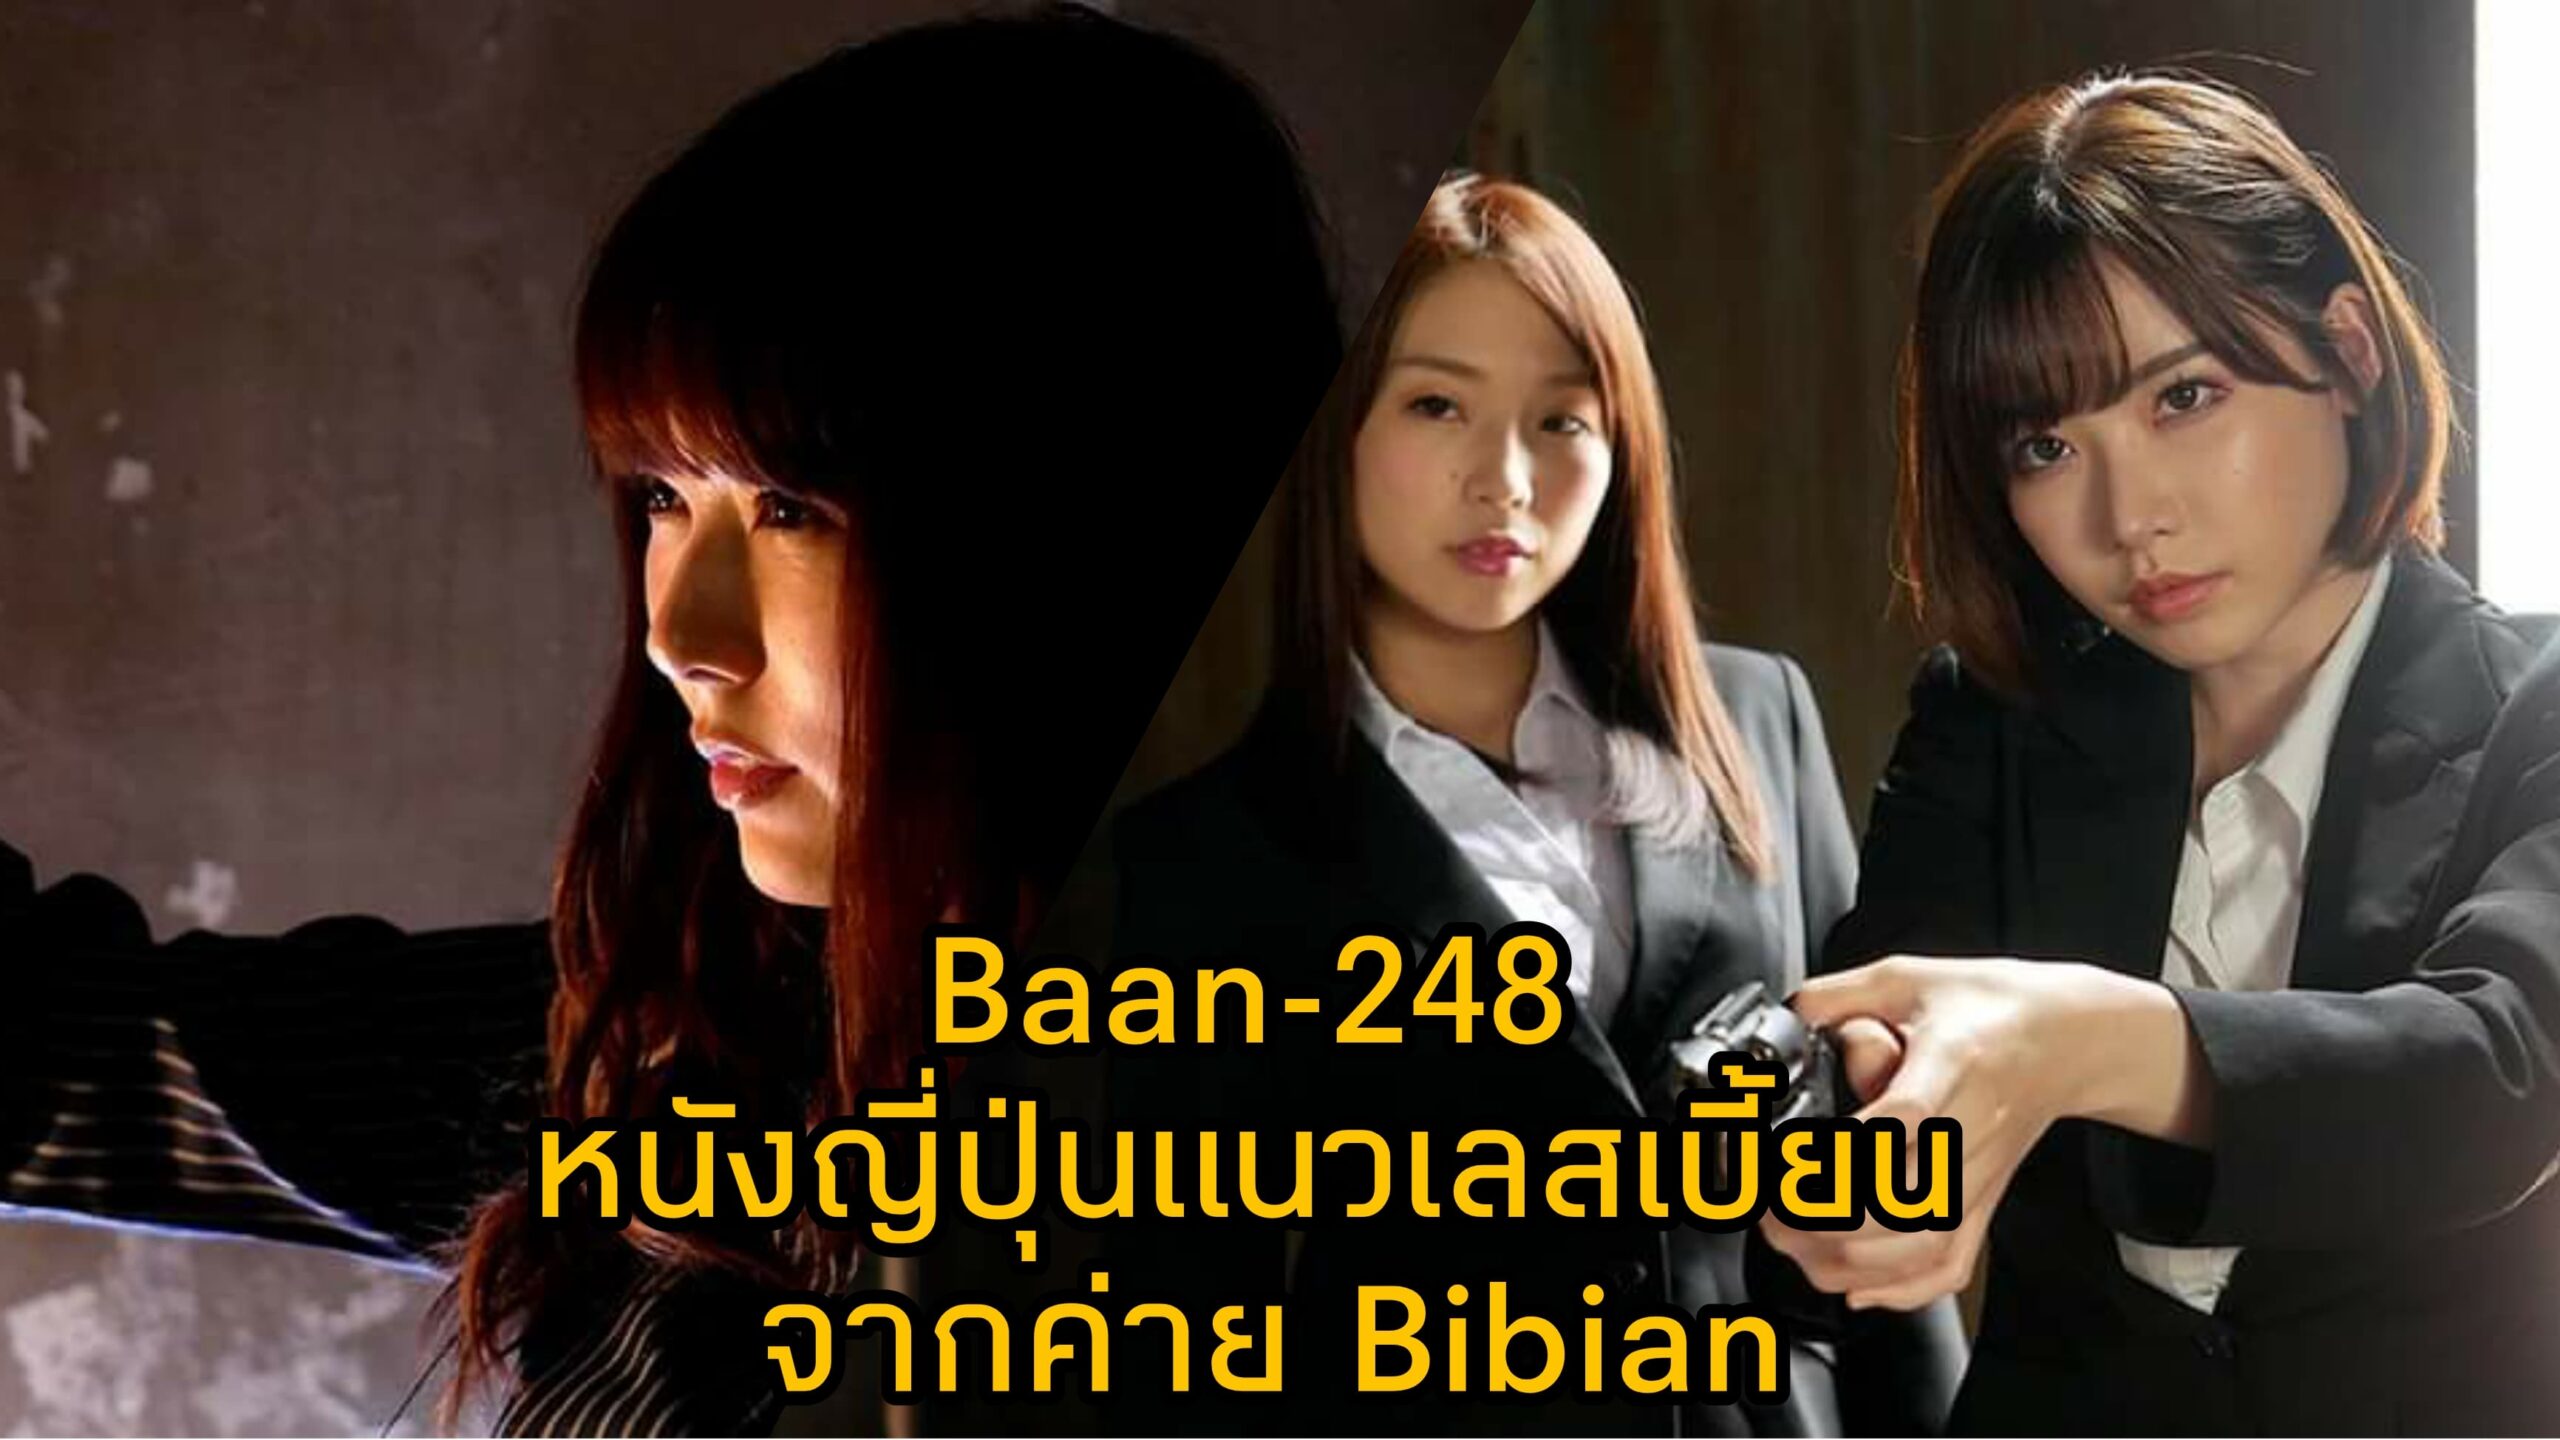 Bann-248 หนัง JAV แนวเลสเบี้ยน นำแสดงโดย 3 ตัวแม่แห่งวงการเอวี Eimi Fukada 15